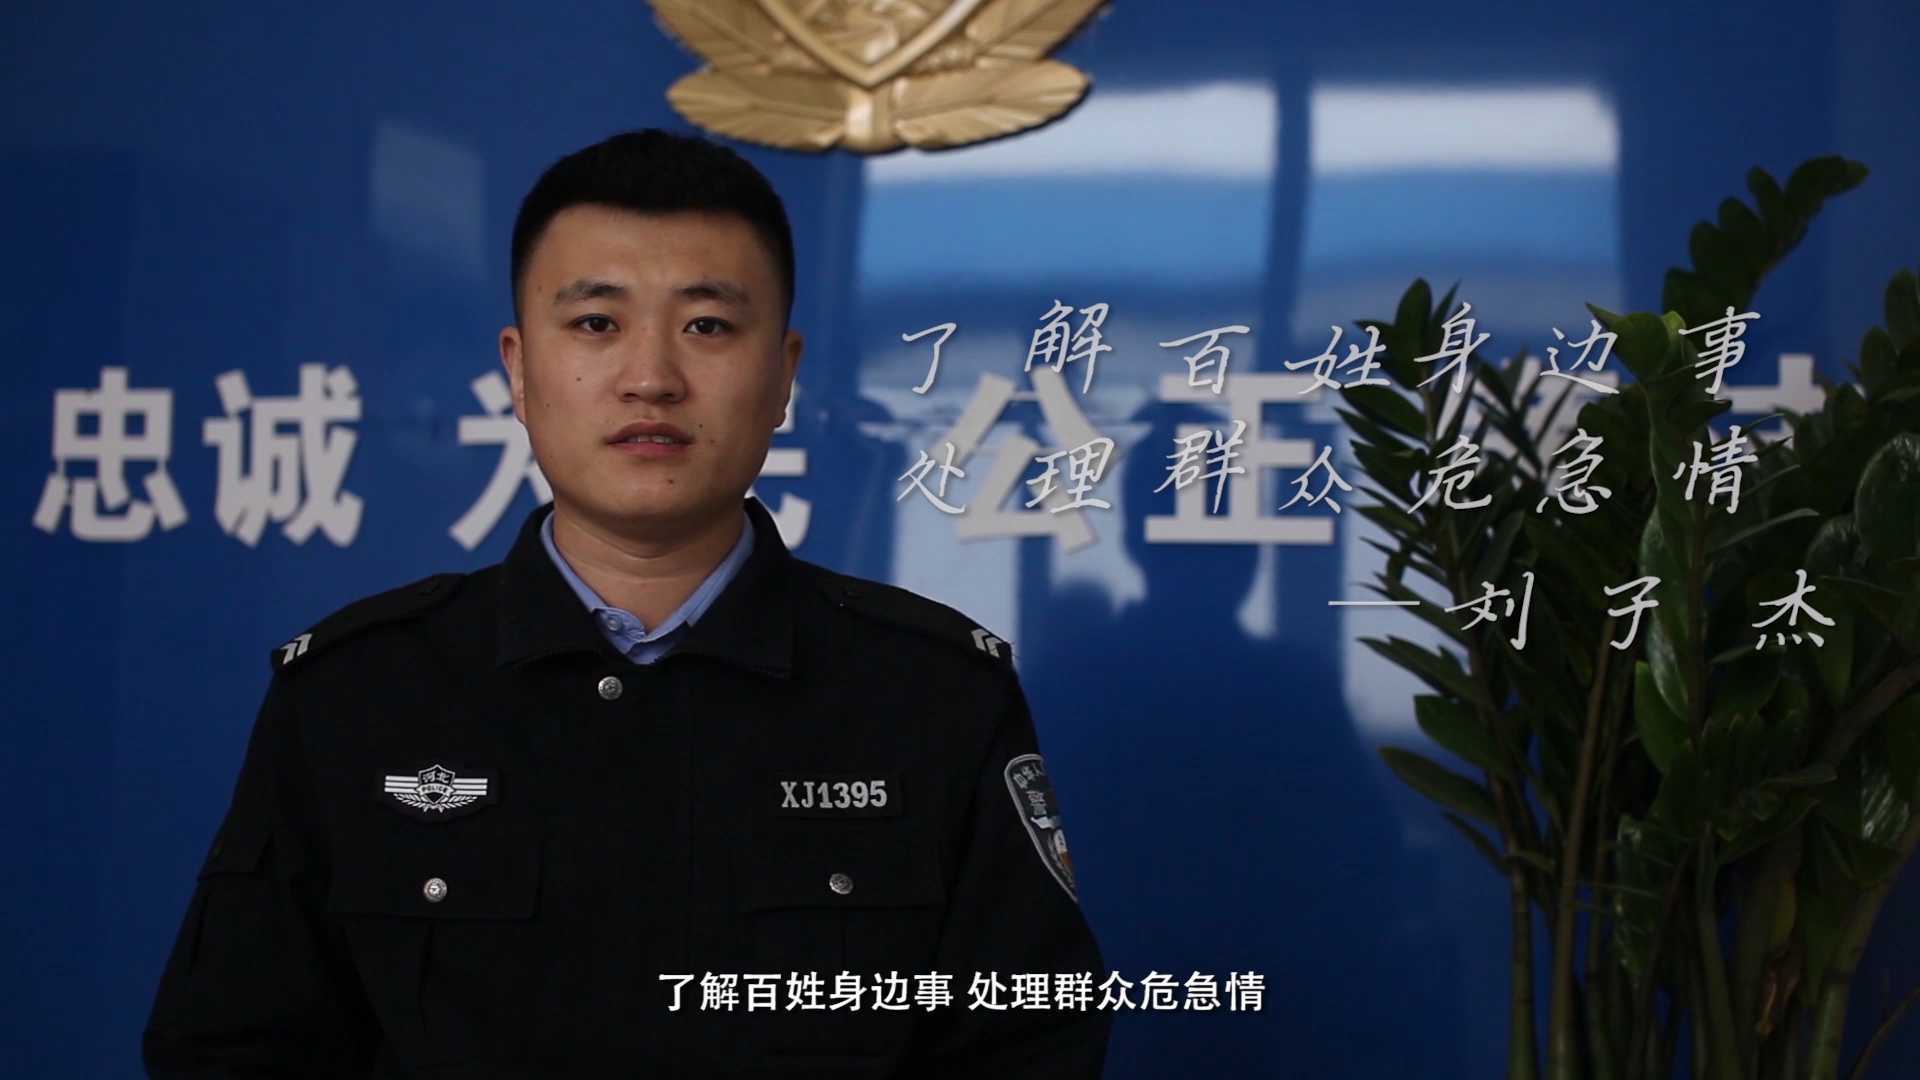 警察故事第十七集刘子杰--踏寻民情·为民解忧